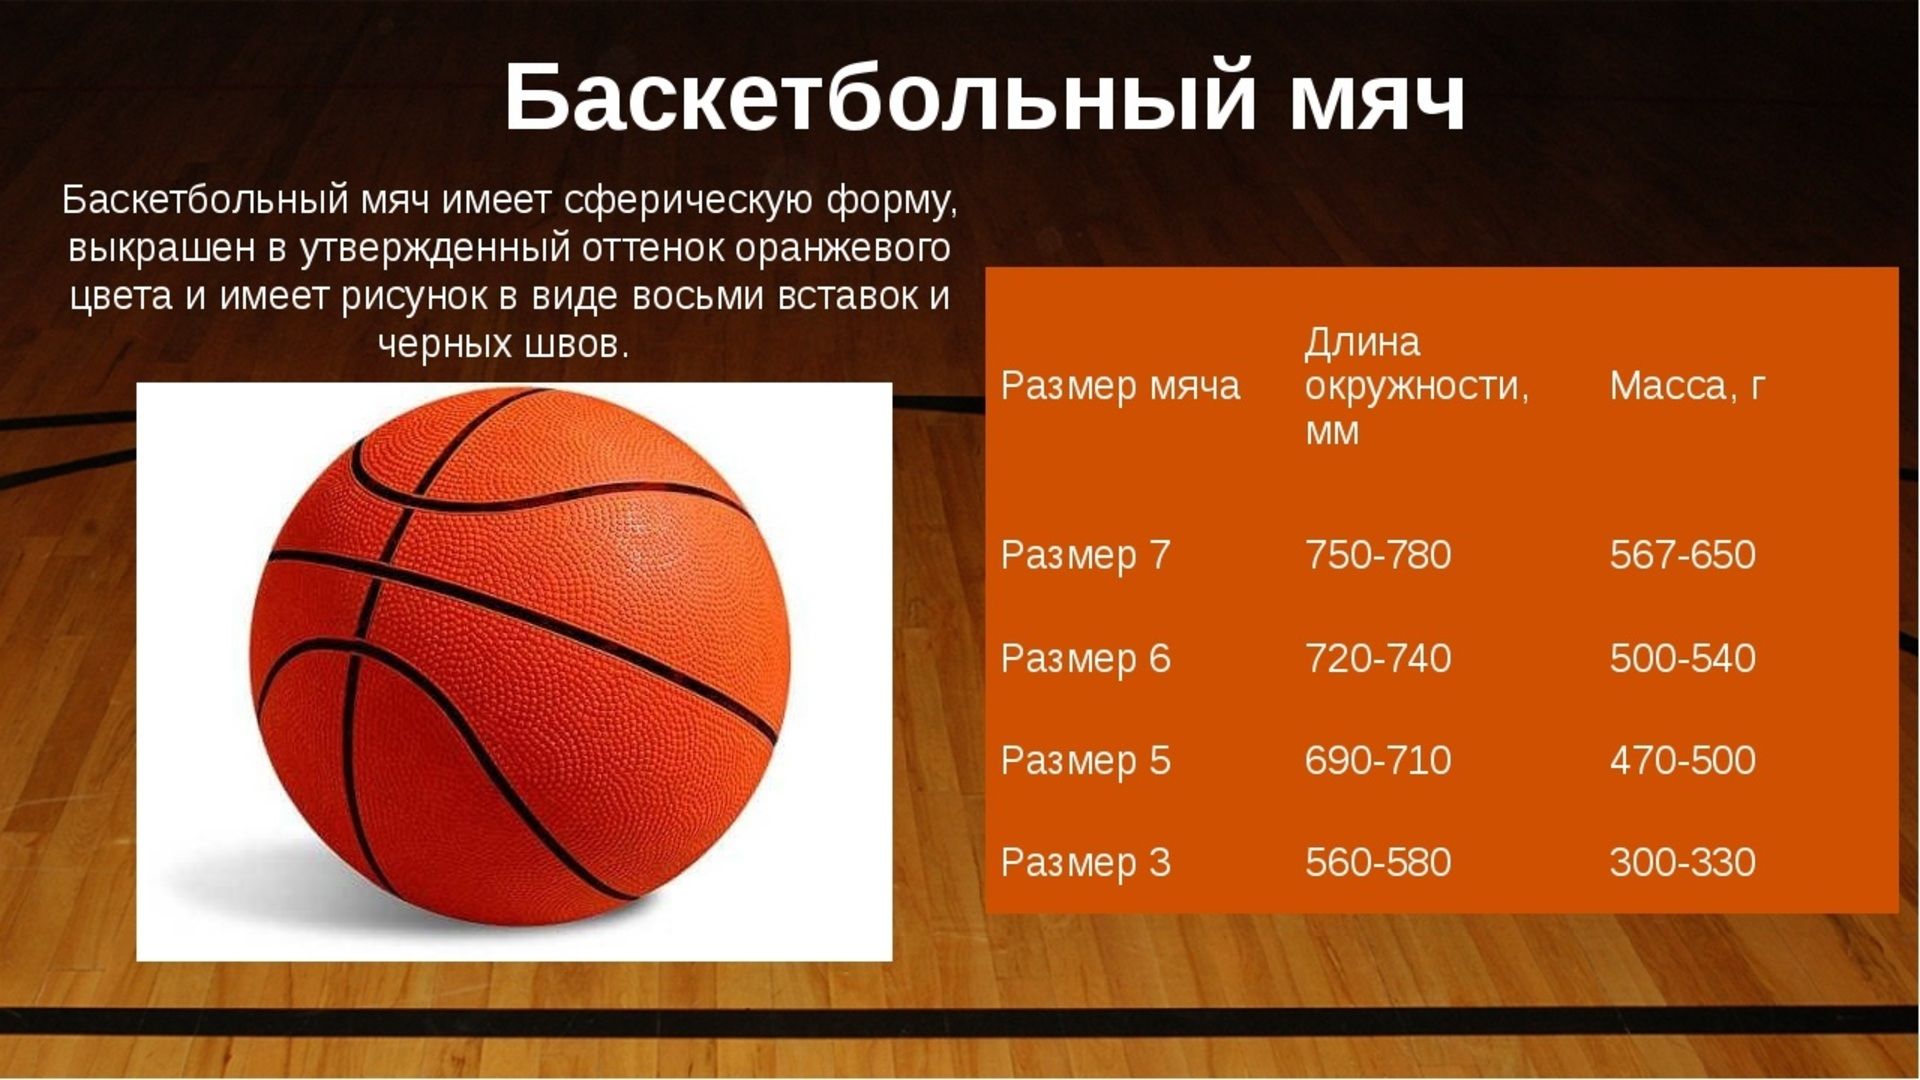 Размеры баскетбольного мяча